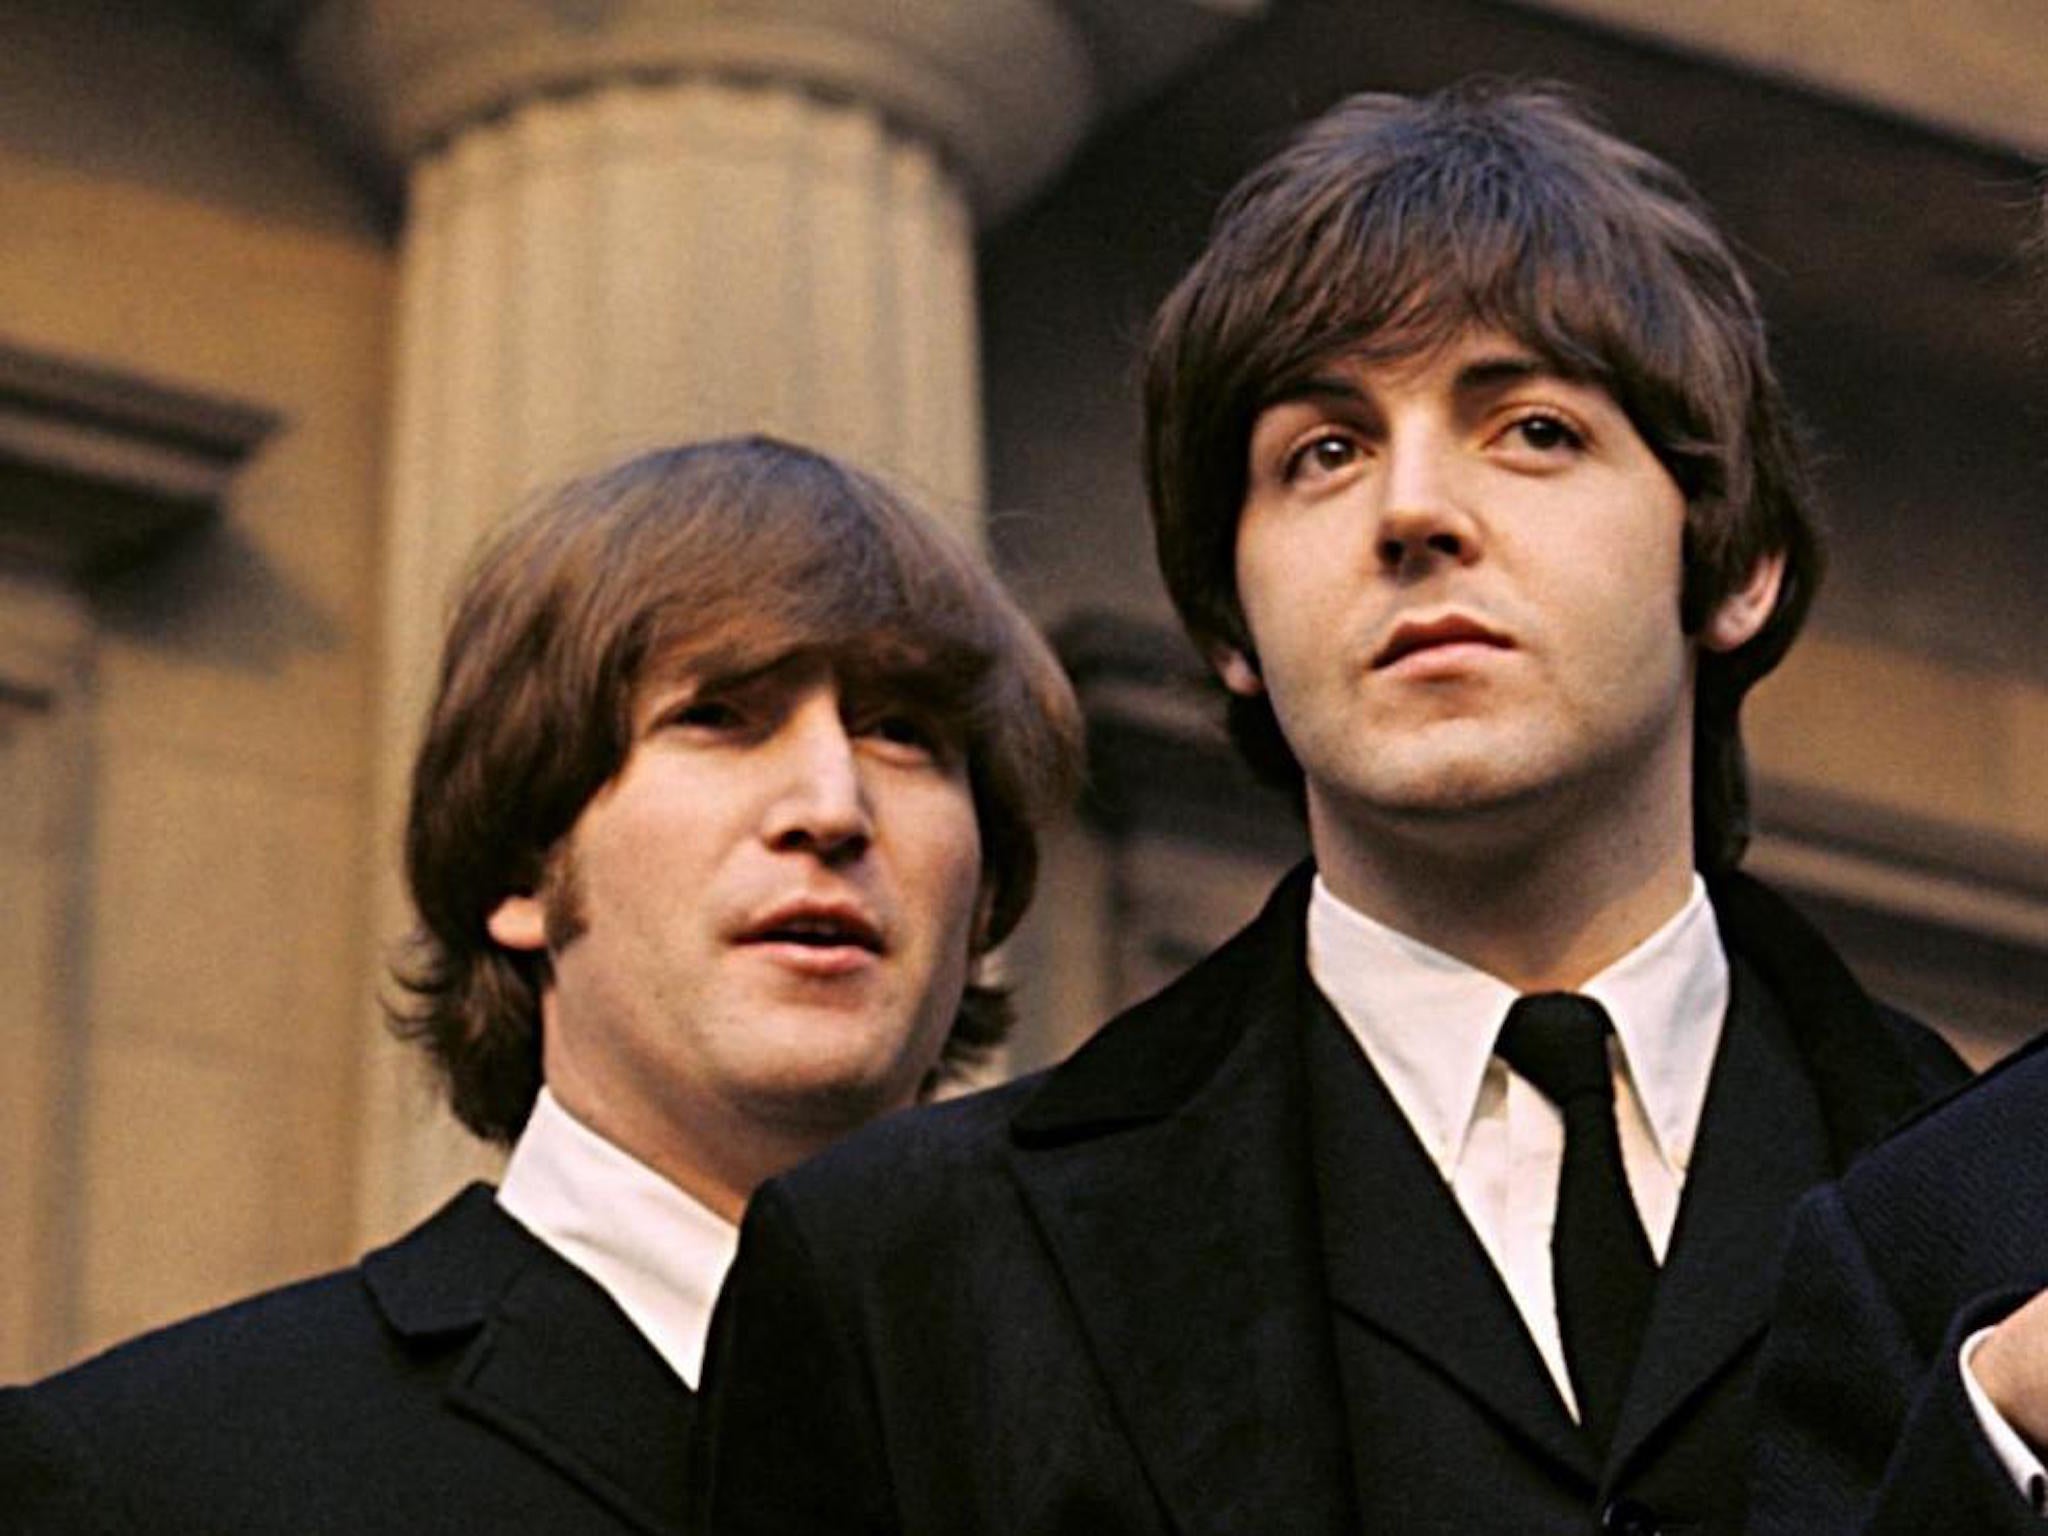 Paul McCartney says his reunion with John Lennon made…